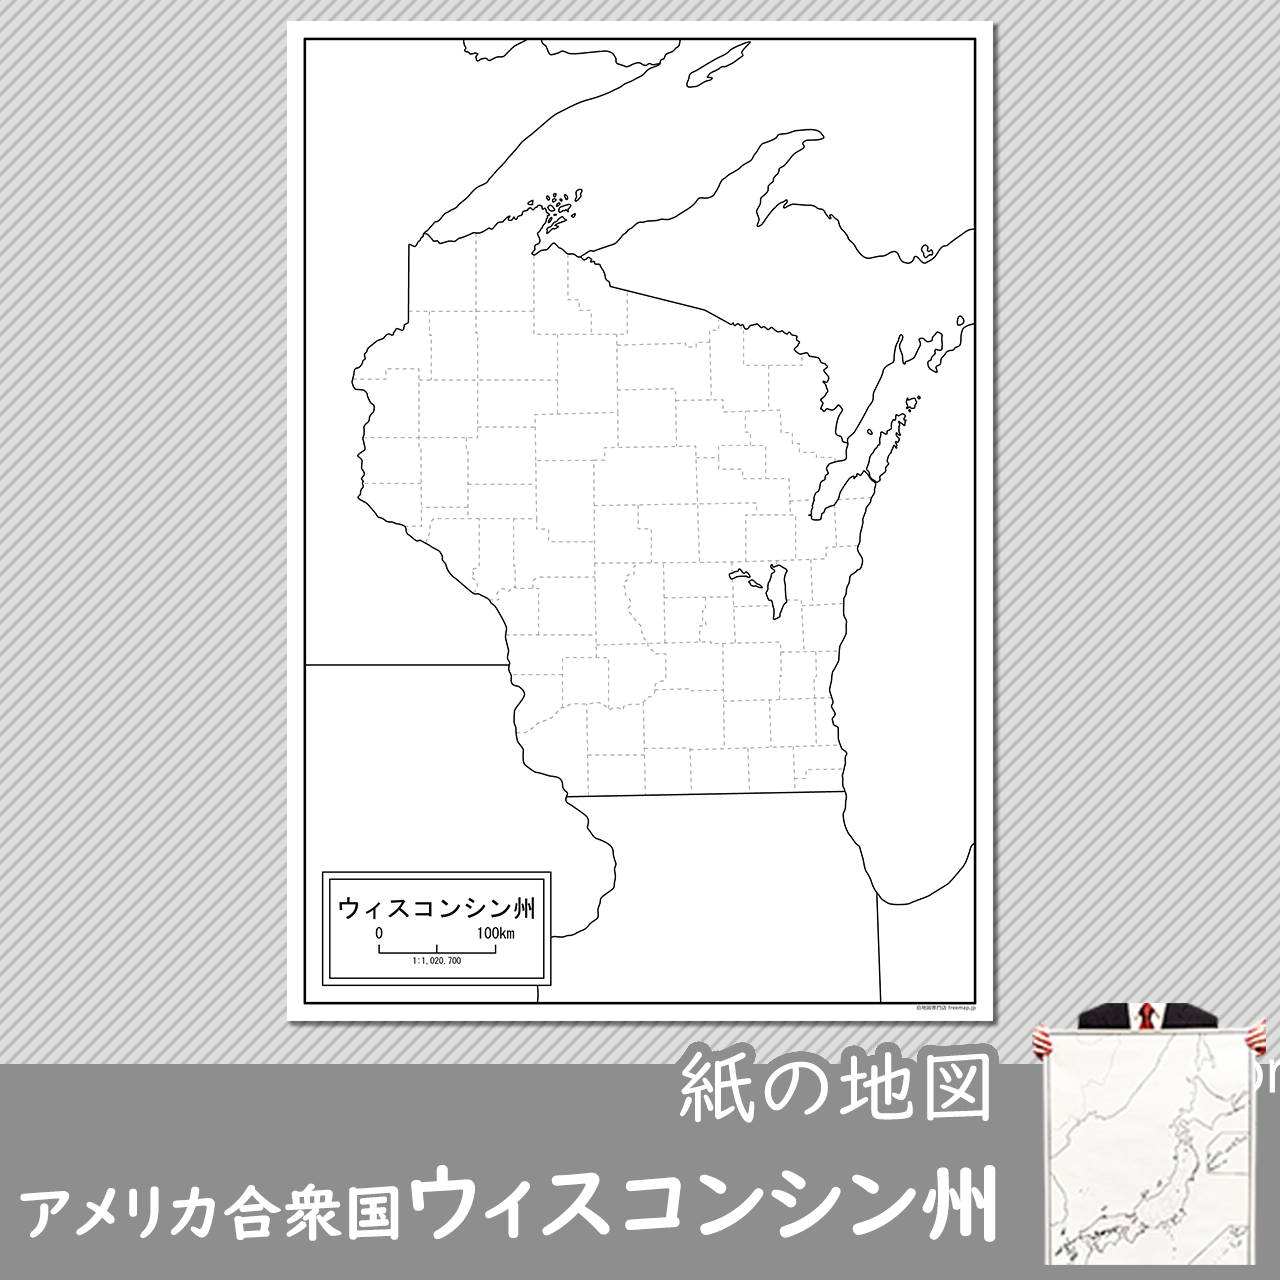 ウィスコンシン州の紙の白地図のサムネイル